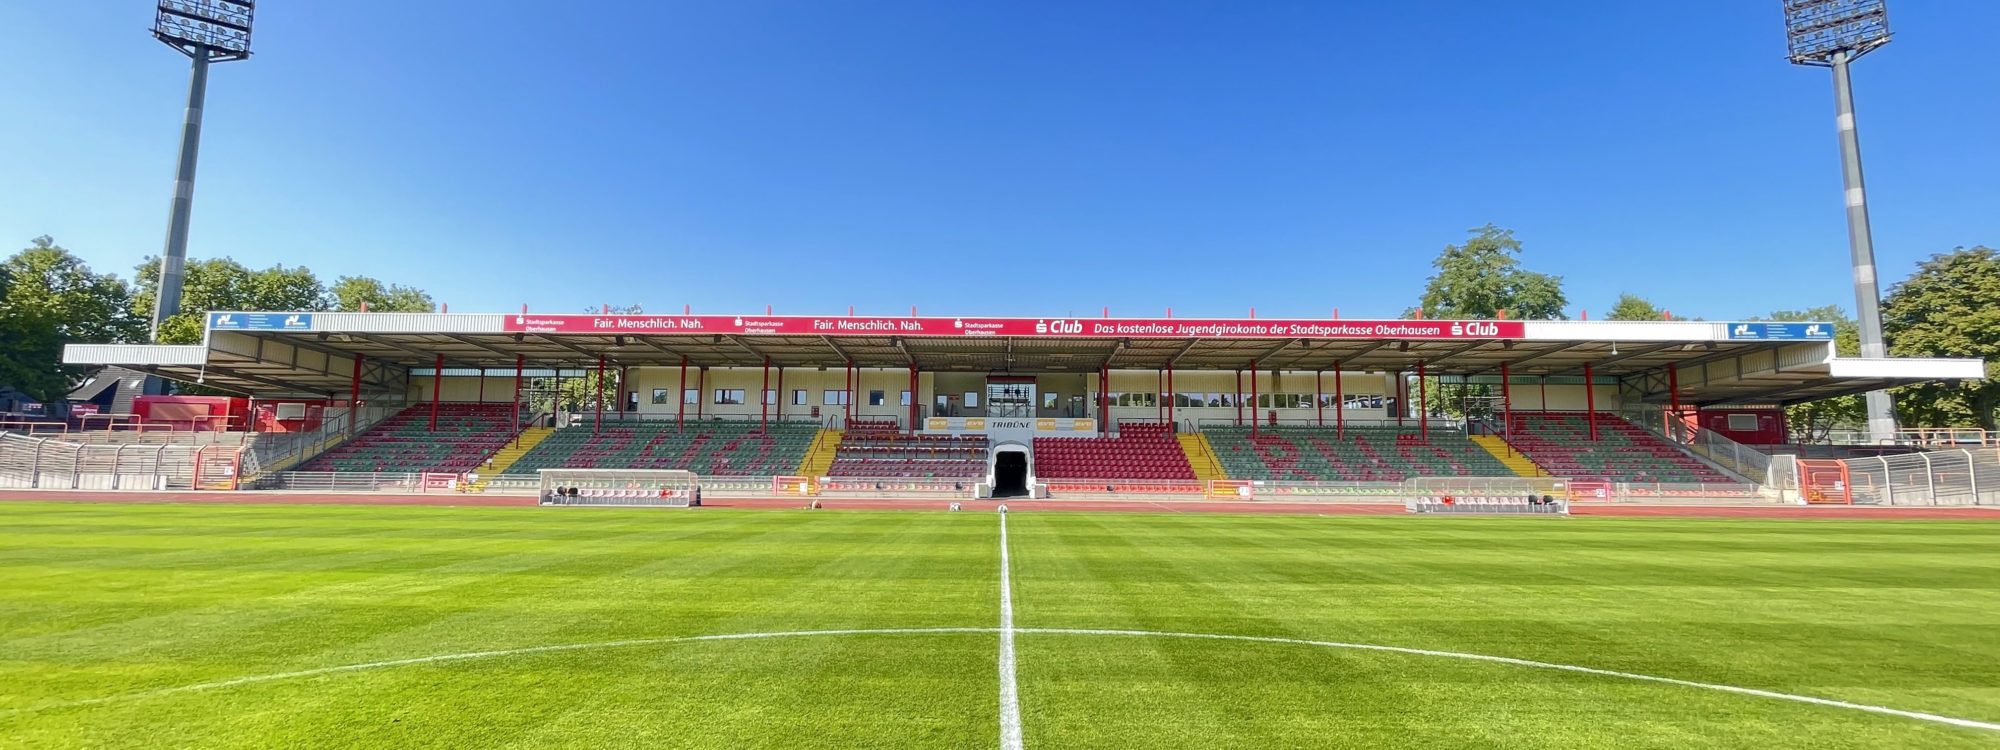 De afbeelding toont het Niederrhein Stadion in Oberhausen